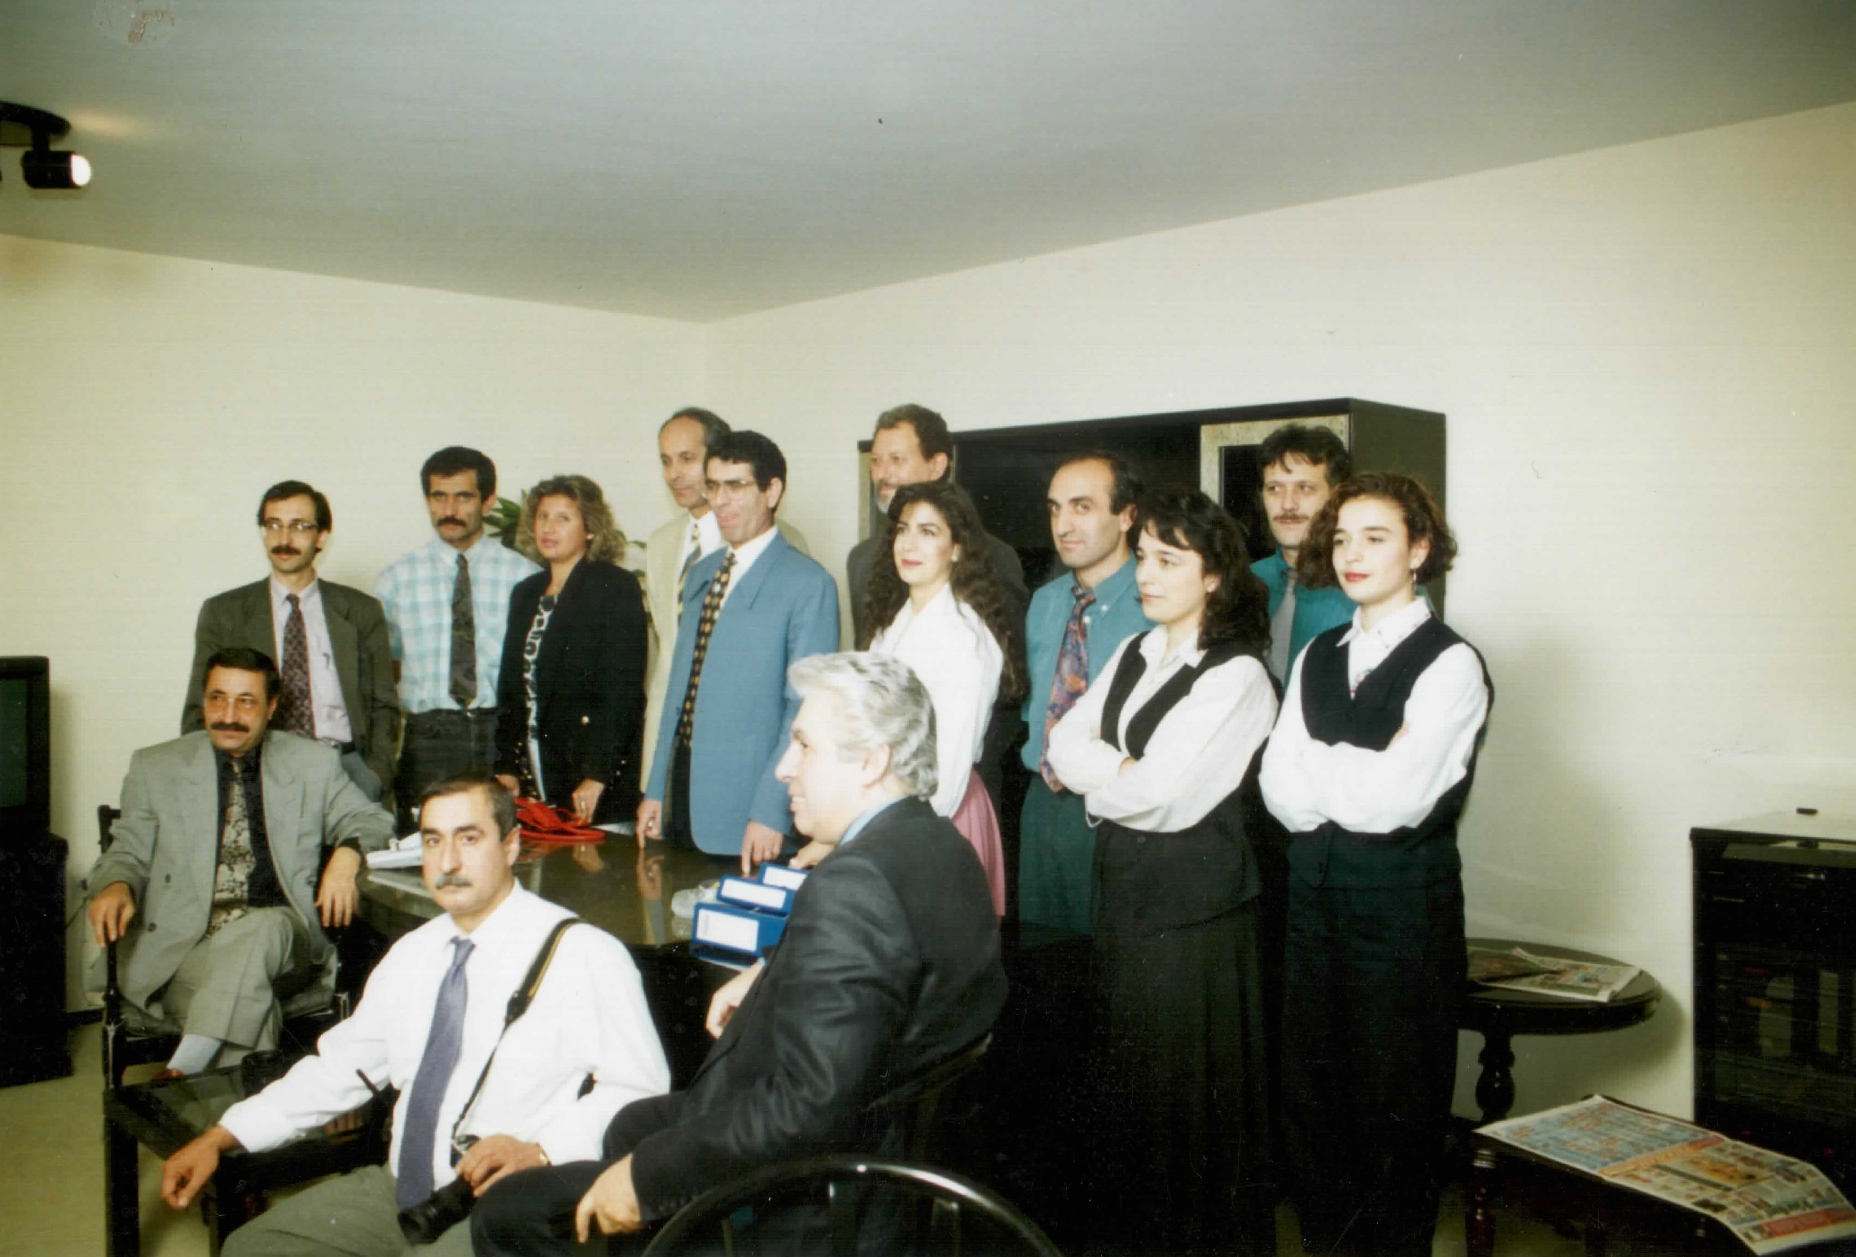 xTürk Haberler Ajansı yöneticileri “Haber Değerlendirme” toplantısında (1994 )